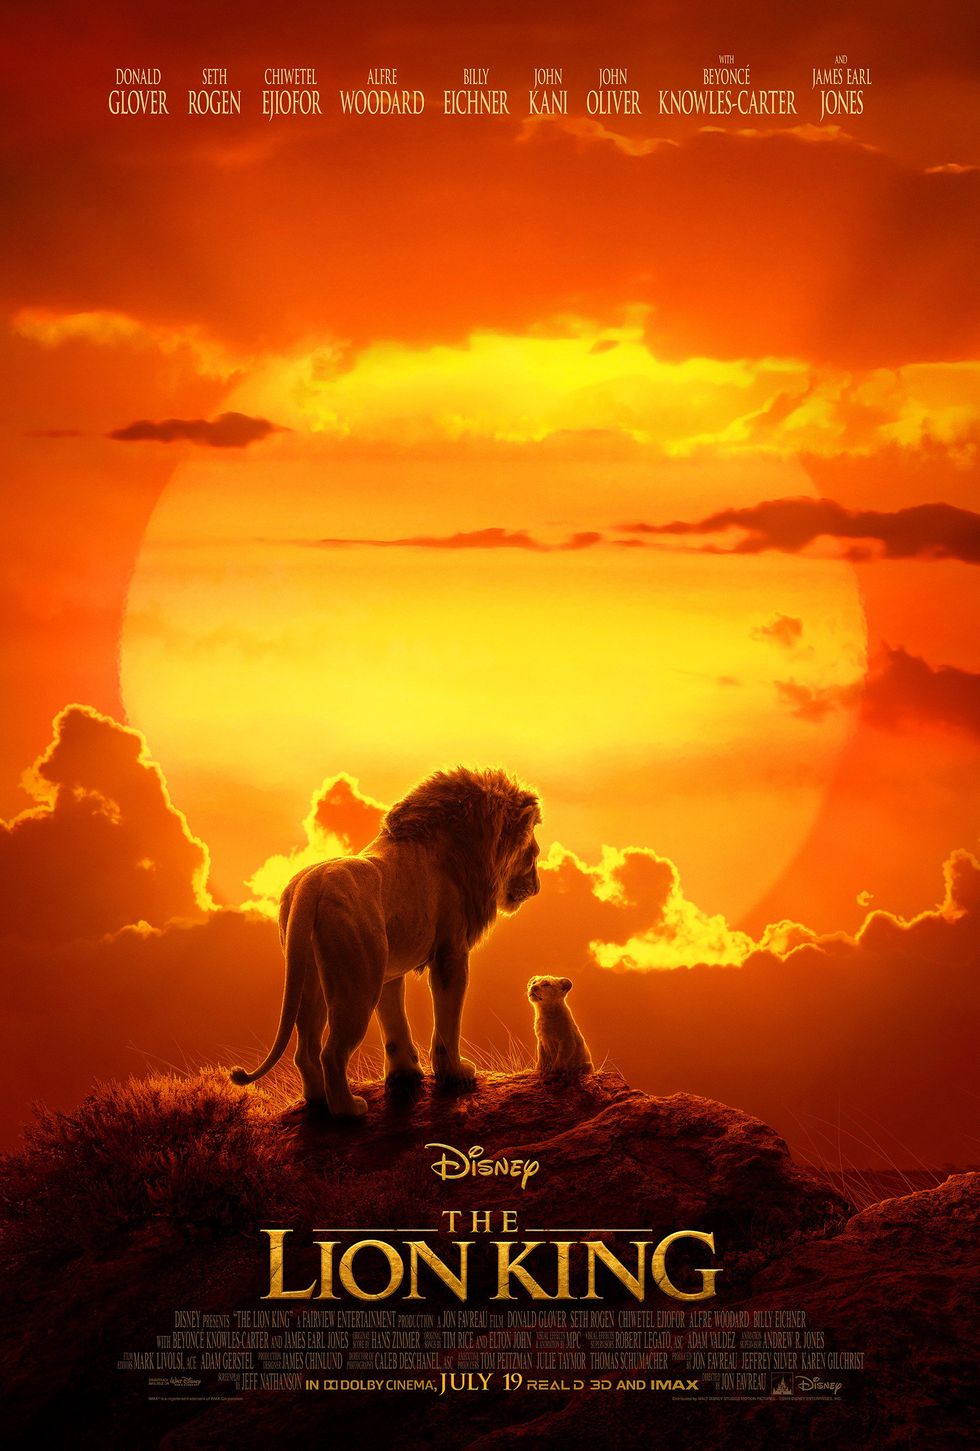 Disney confirma el reparto de El Rey León, con Donald Glover y